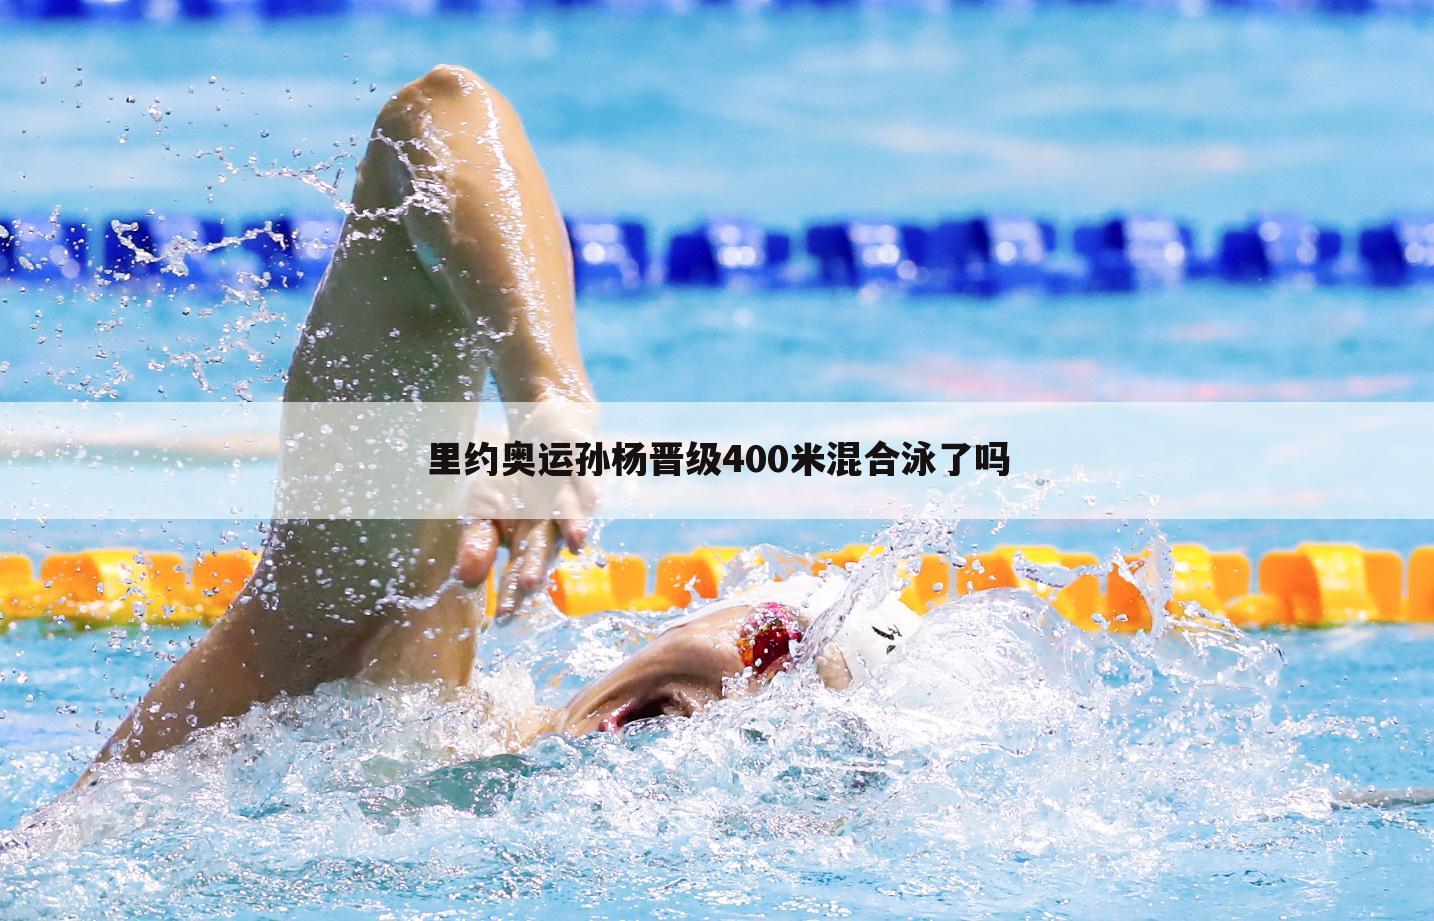 里约奥运孙杨晋级400米混合泳了吗